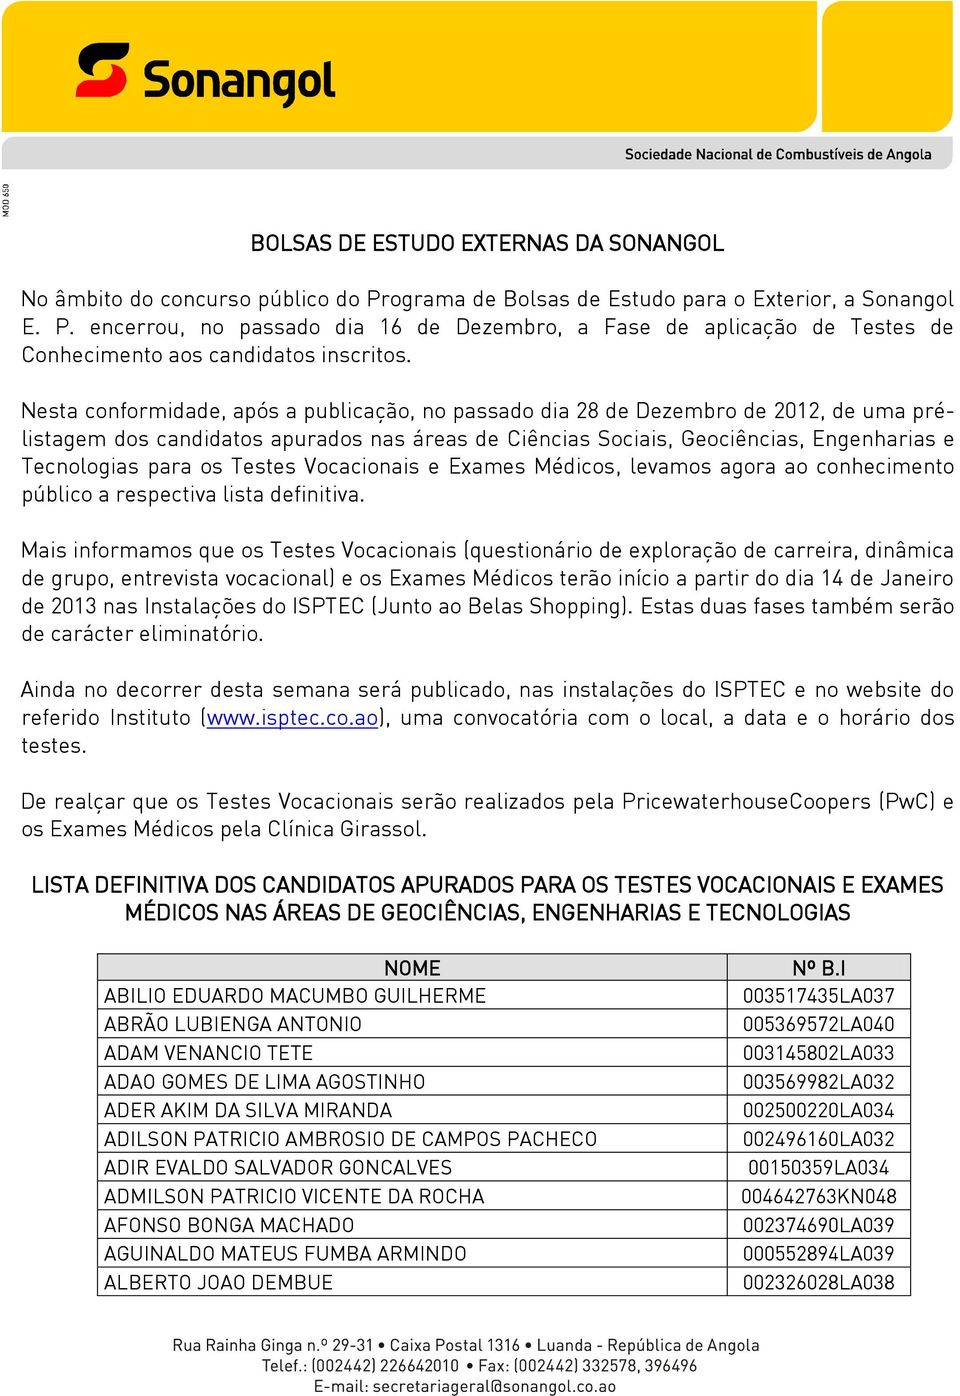 BOLSAS DE ESTUDO EXTERNAS DA SONANGOL - PDF Download grátis